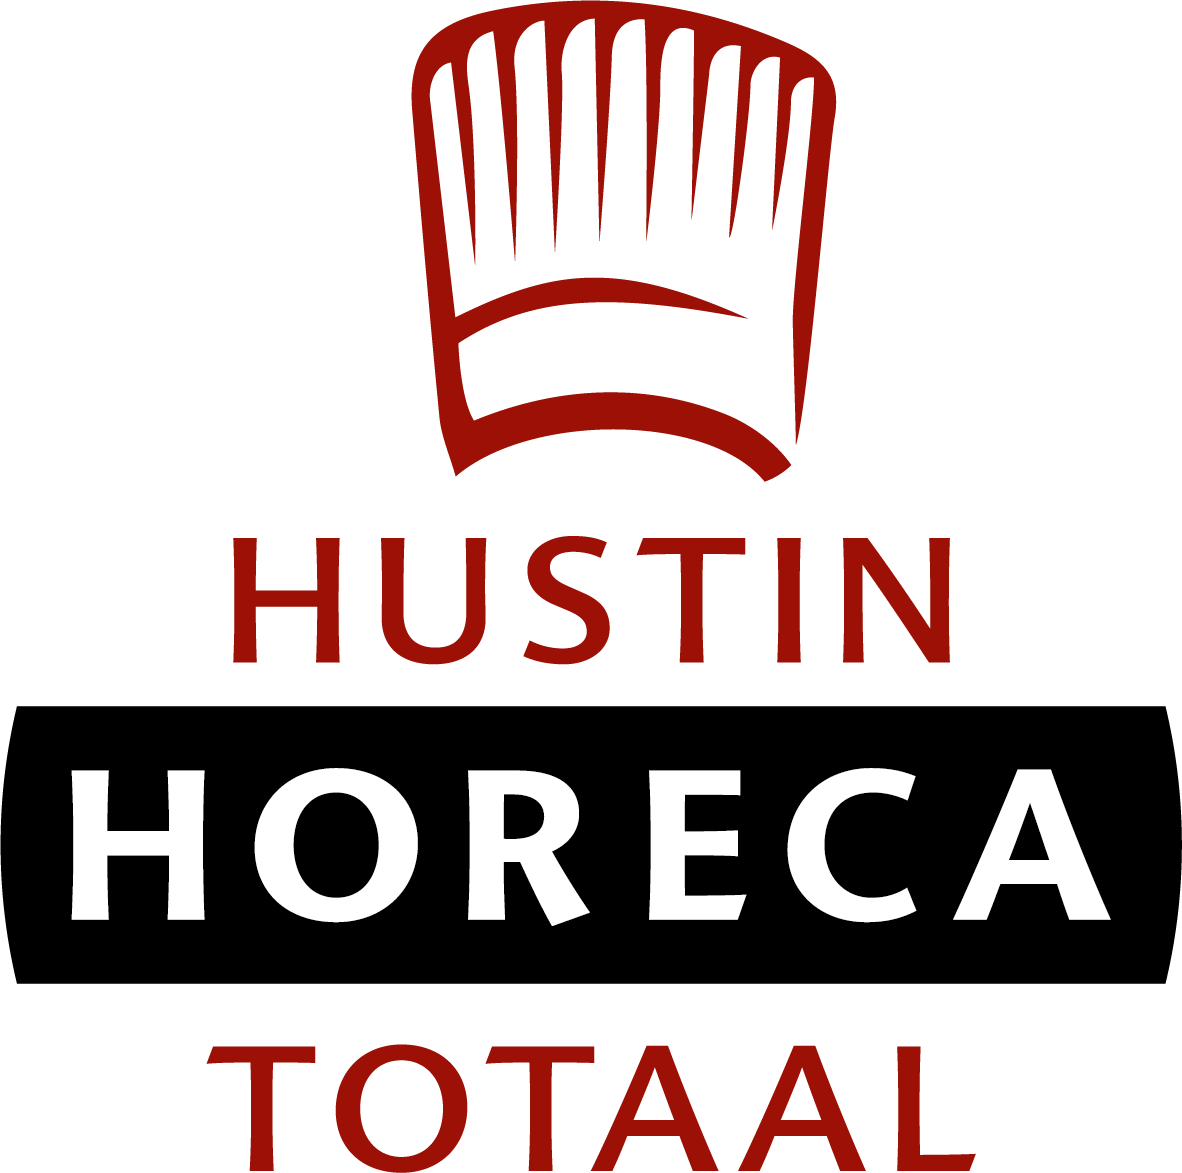 Hustin Horeca Totaal